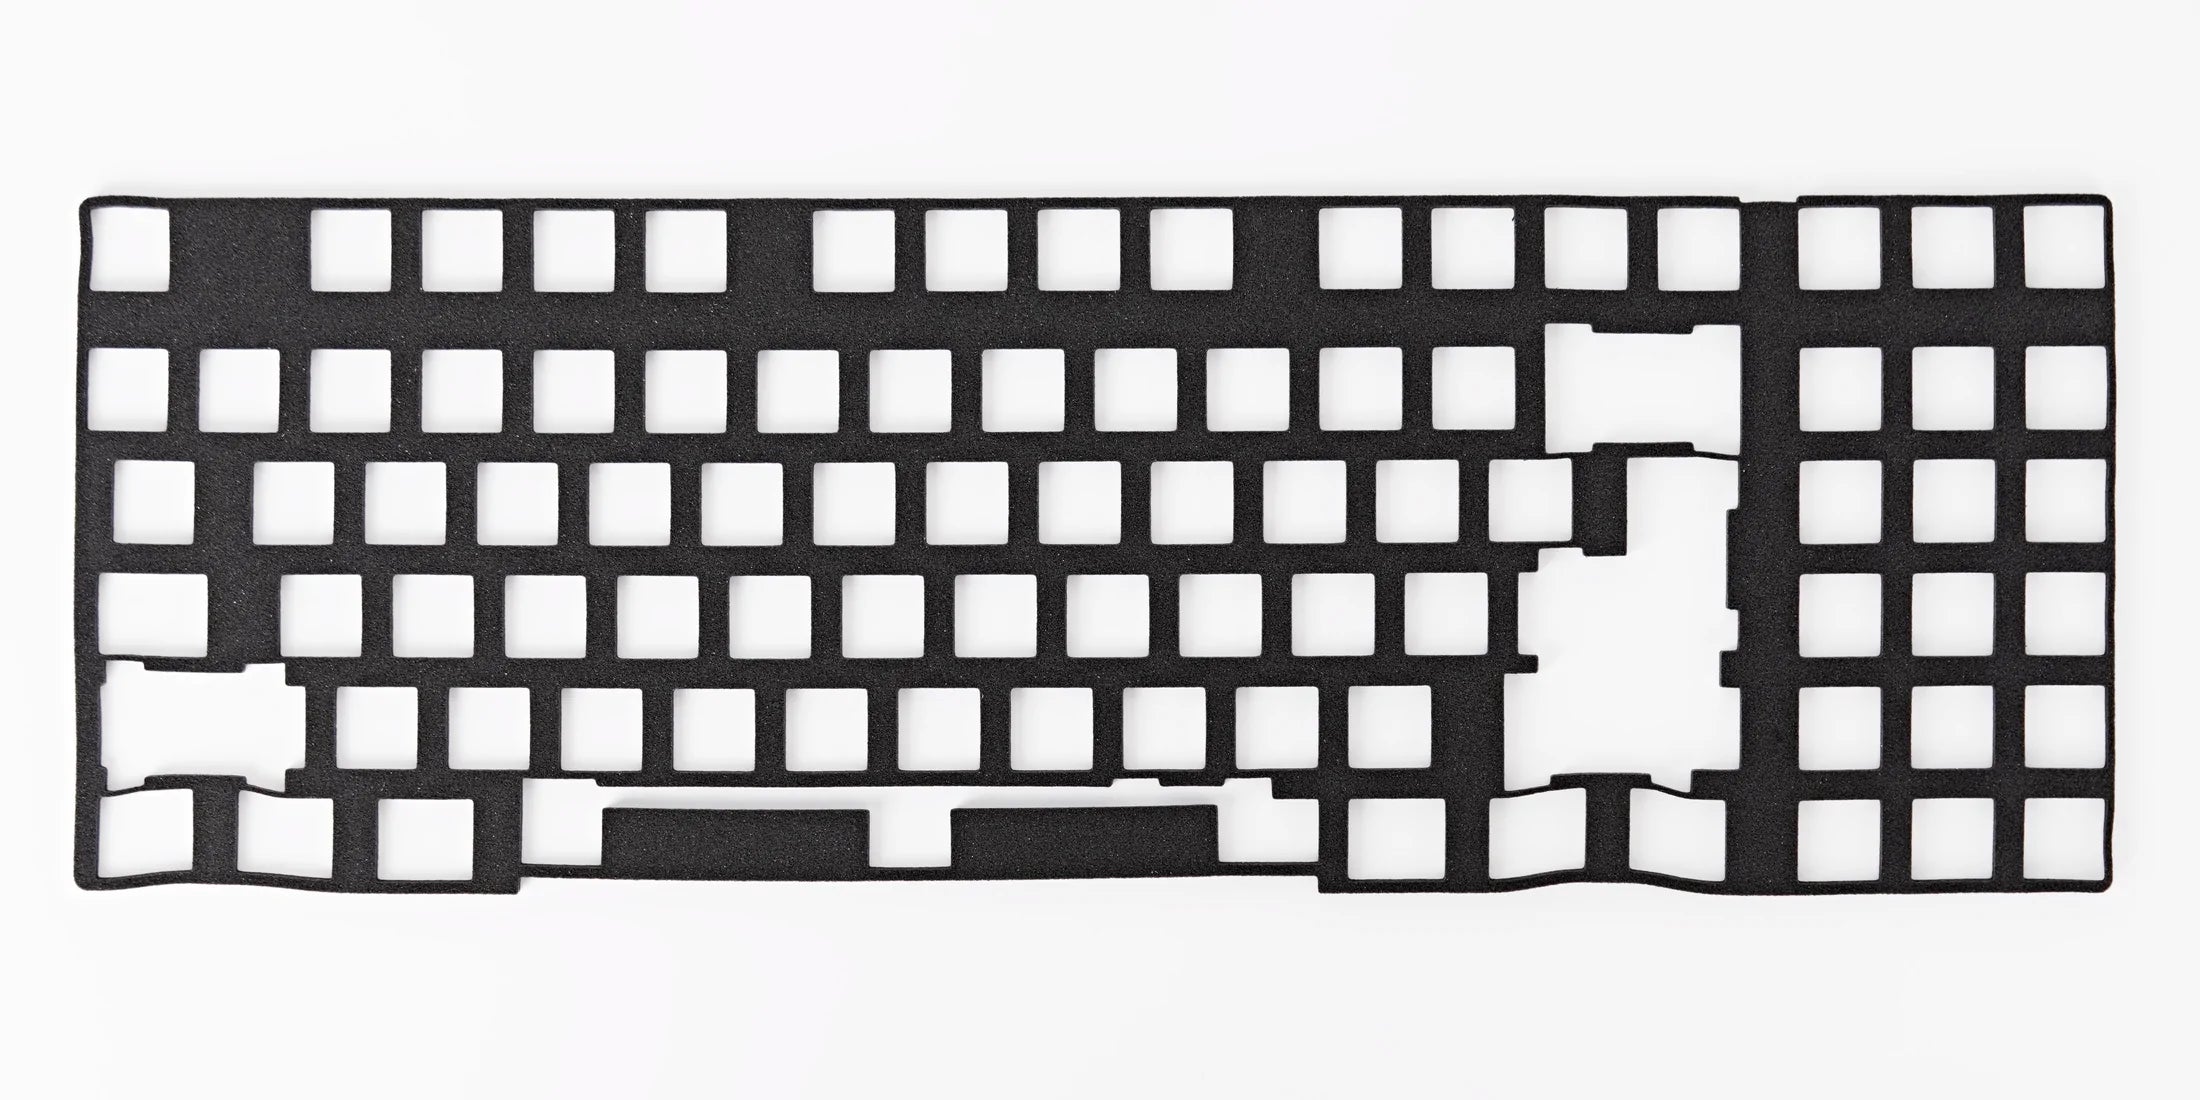 GEON Keyboard Foams for TKL